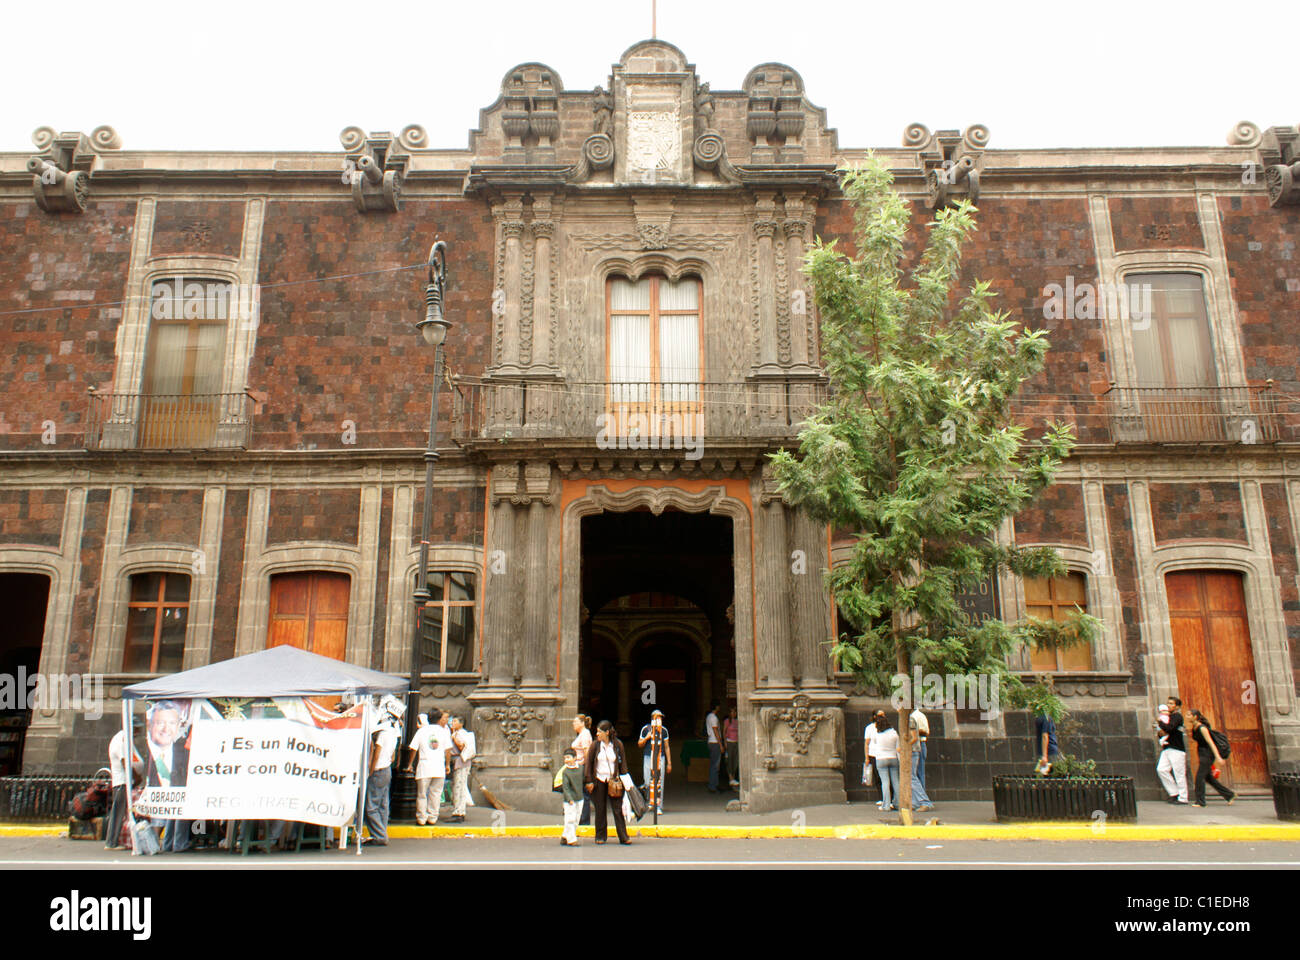 Museum of Mexico City or Museo de la Ciudad de Mexico, Centro Historico, Mexico City, Mexico Stock Photo